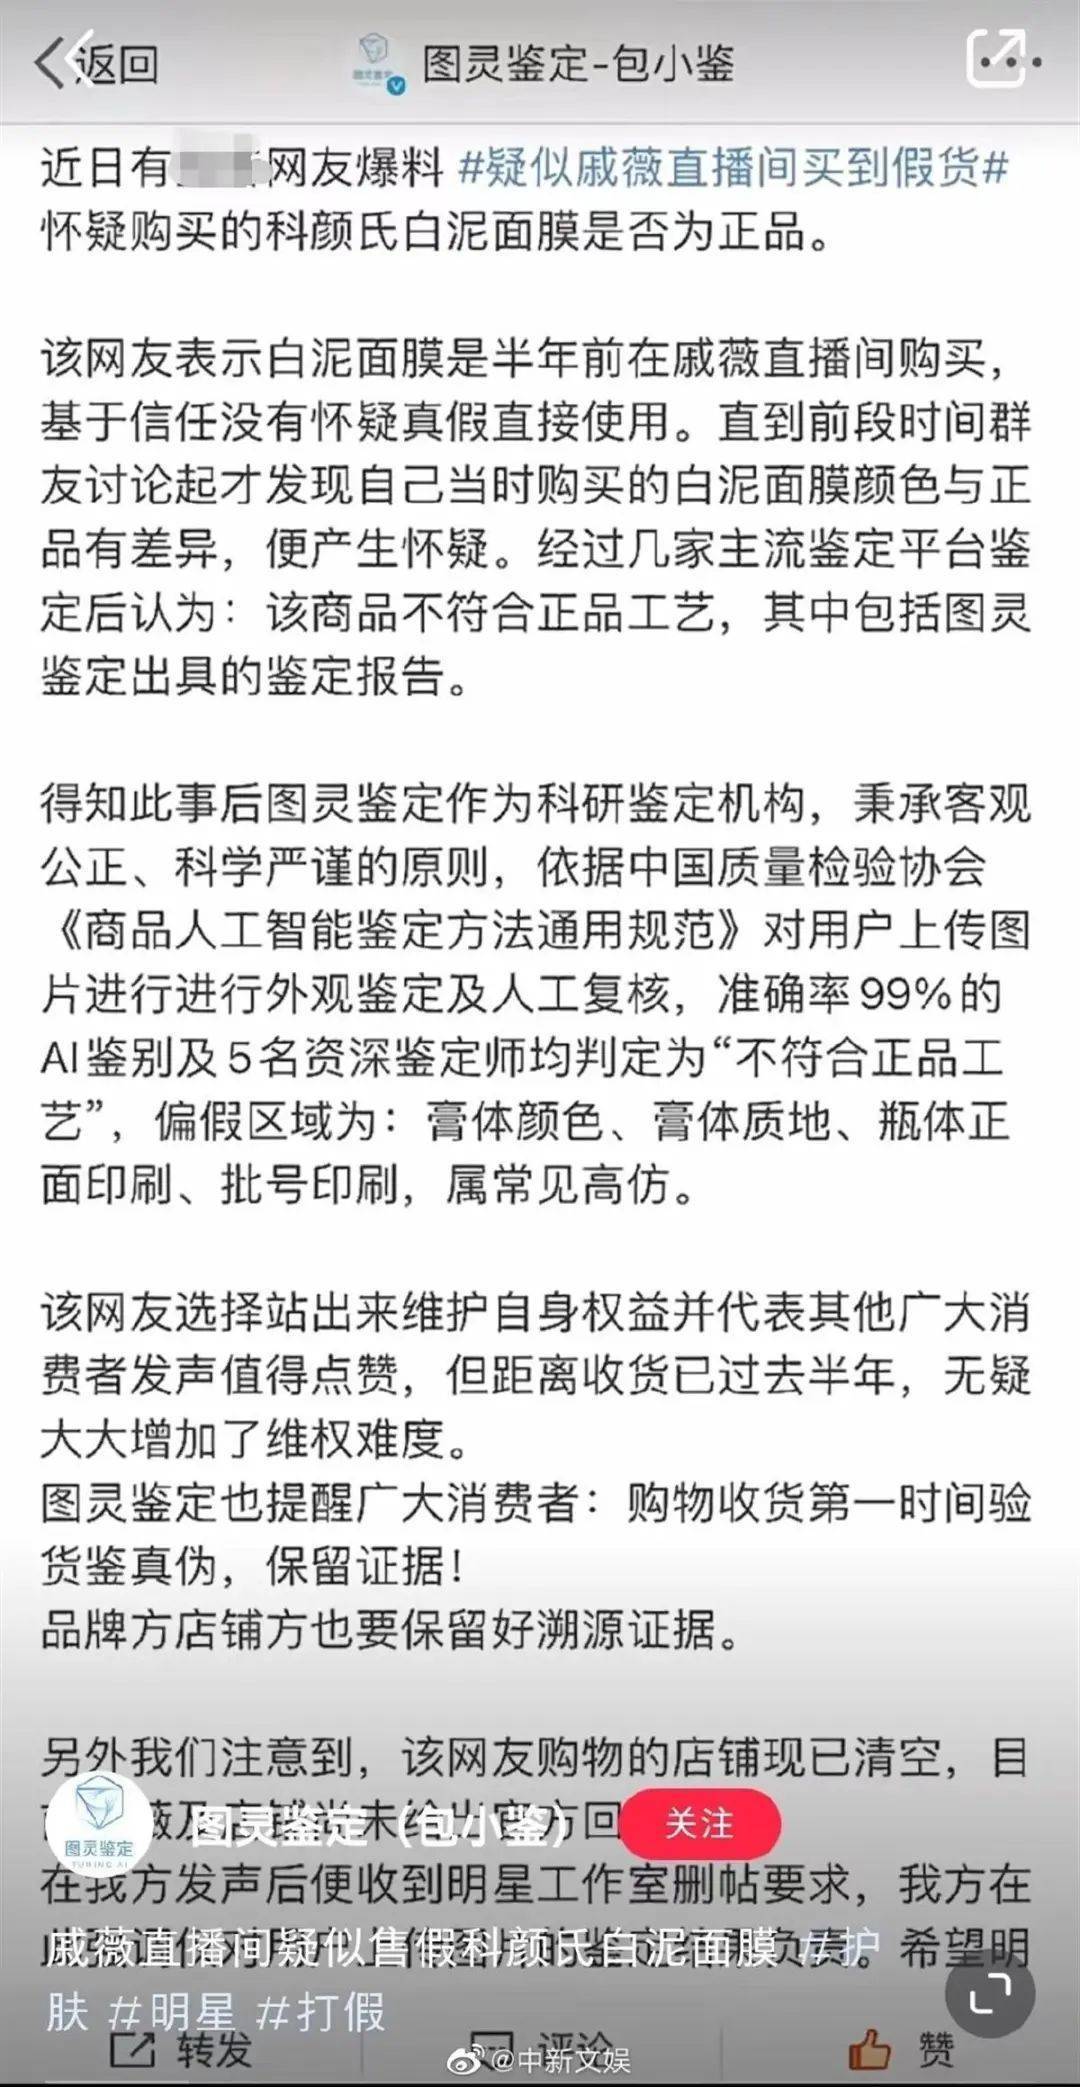 熱搜第三！著名男演員北京人民廣播電台貨品遭批評是假藥！夢工廠澄清
：已報案